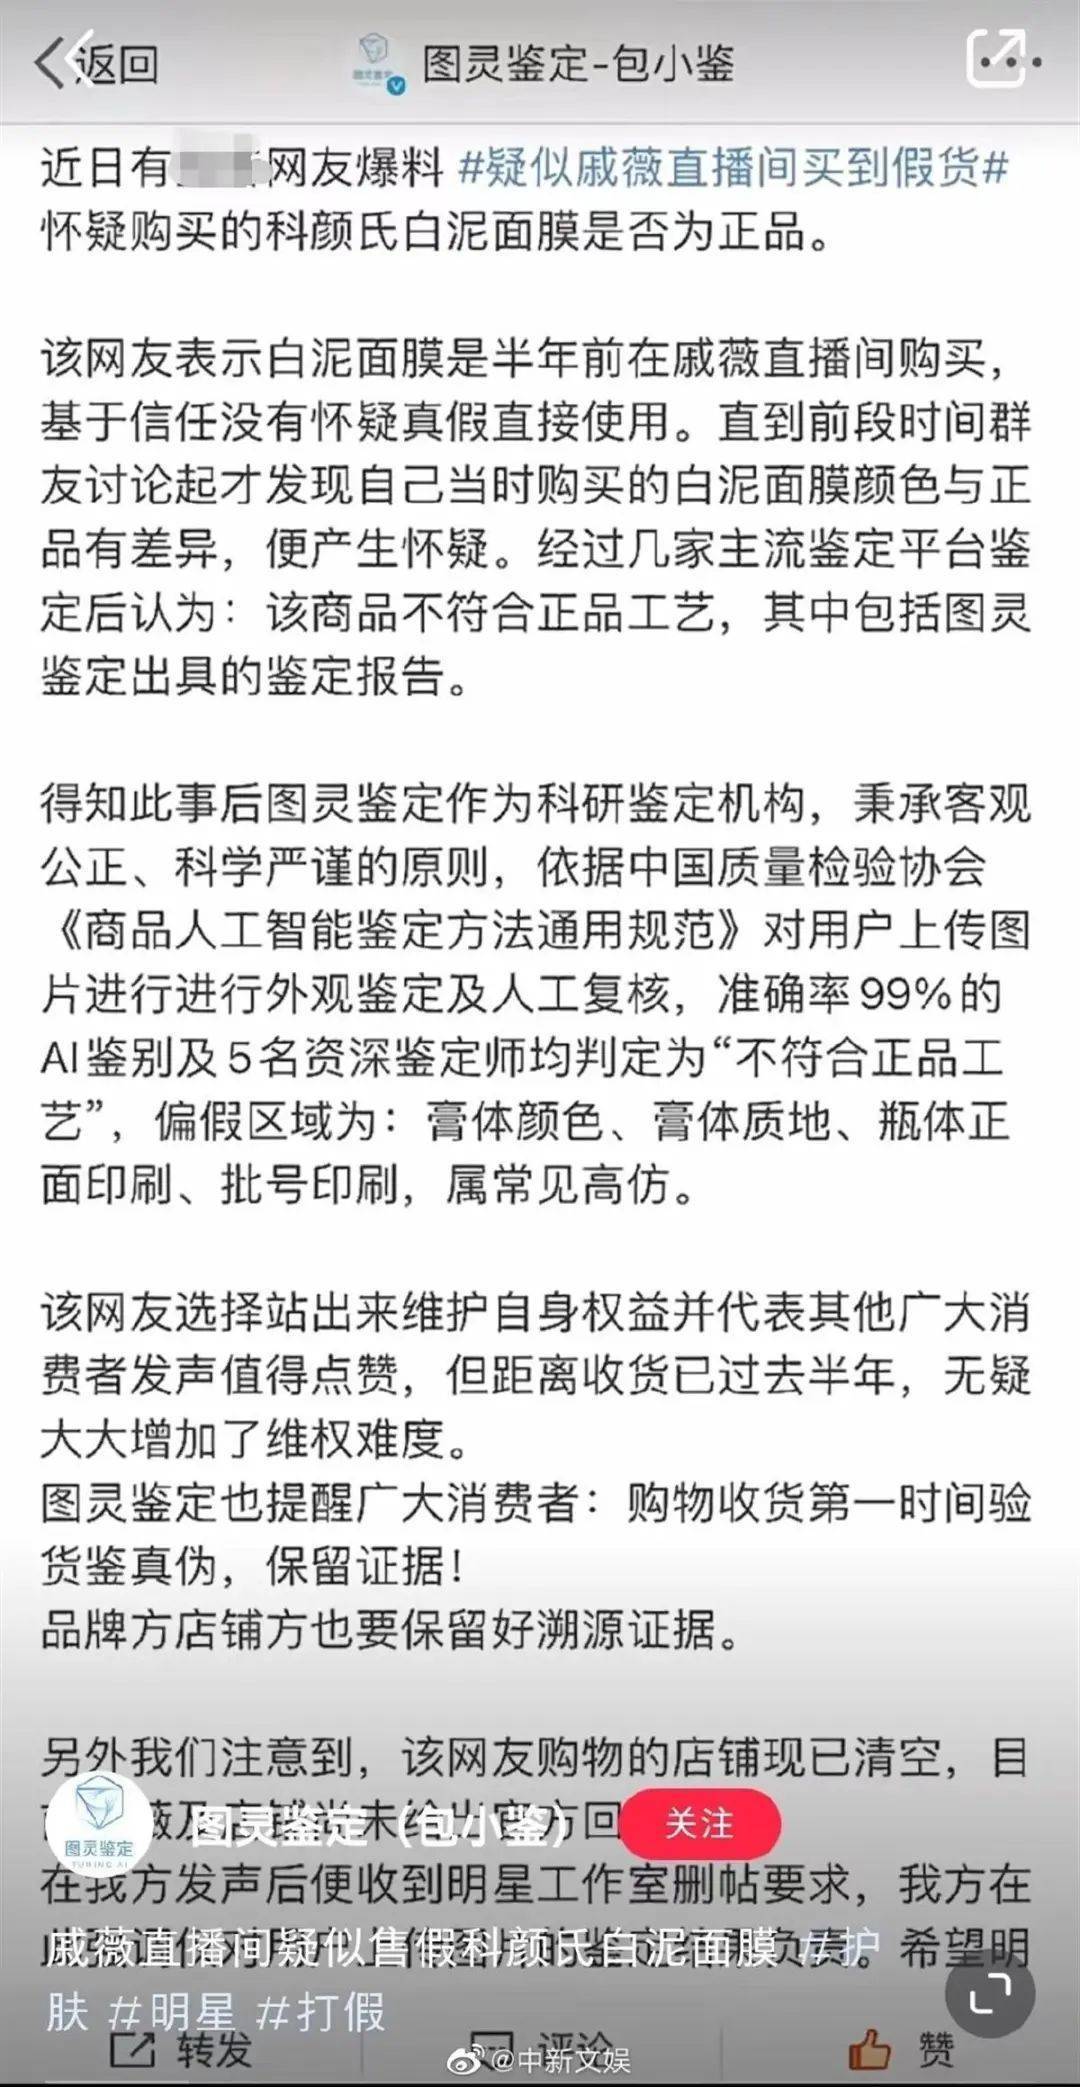 熱搜第三！著名男演員北京人民廣播電台貨品遭批評是假藥！夢工廠澄清
：已報案